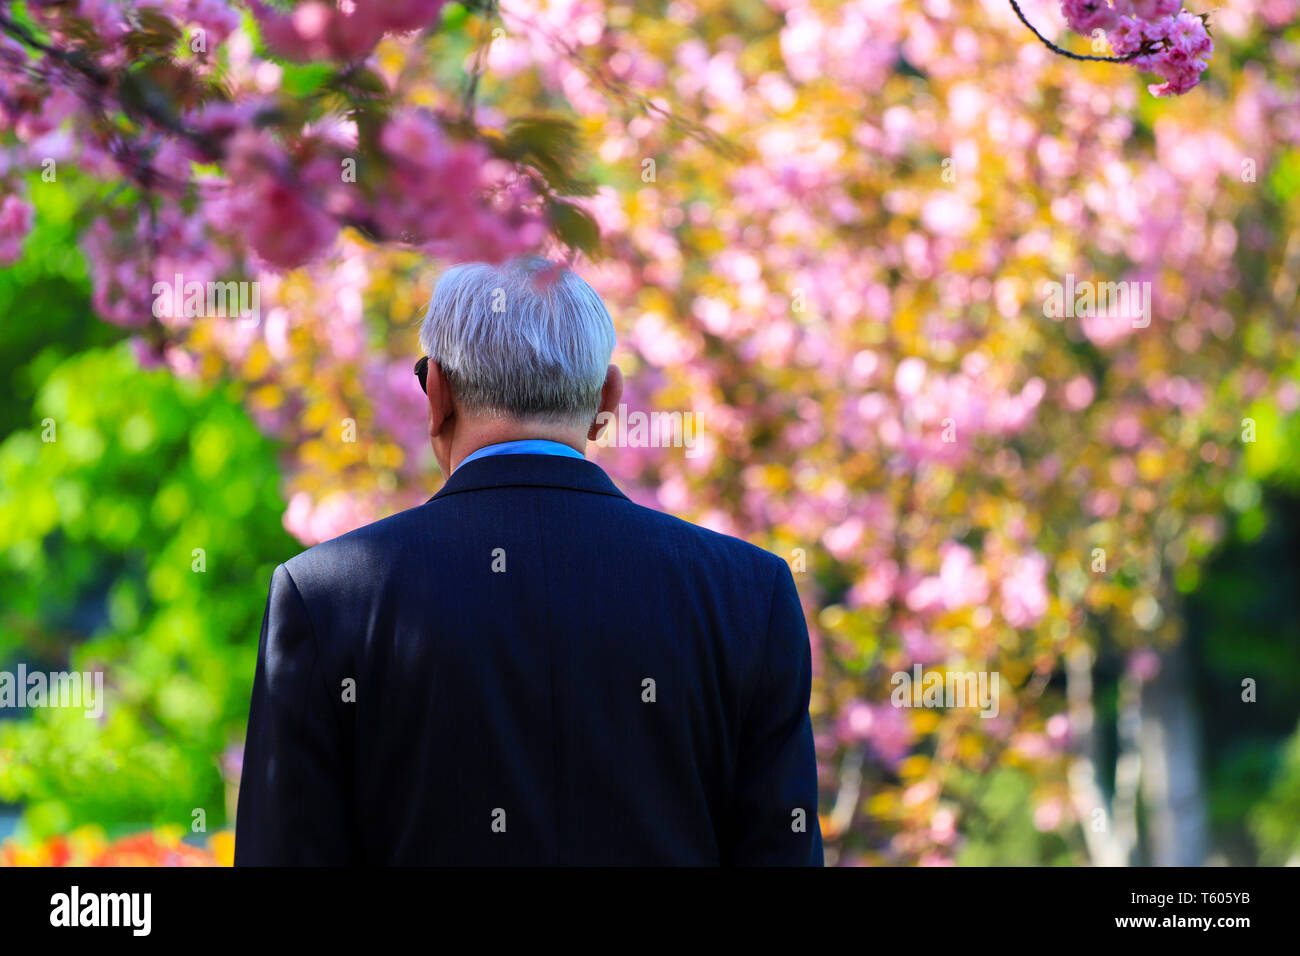 L'homme aux cheveux gris âgés marchant dans la rue entre la floraison, sakura, cerisier japonais, Dnepropetrovsk, Ukraine Dniepr Banque D'Images